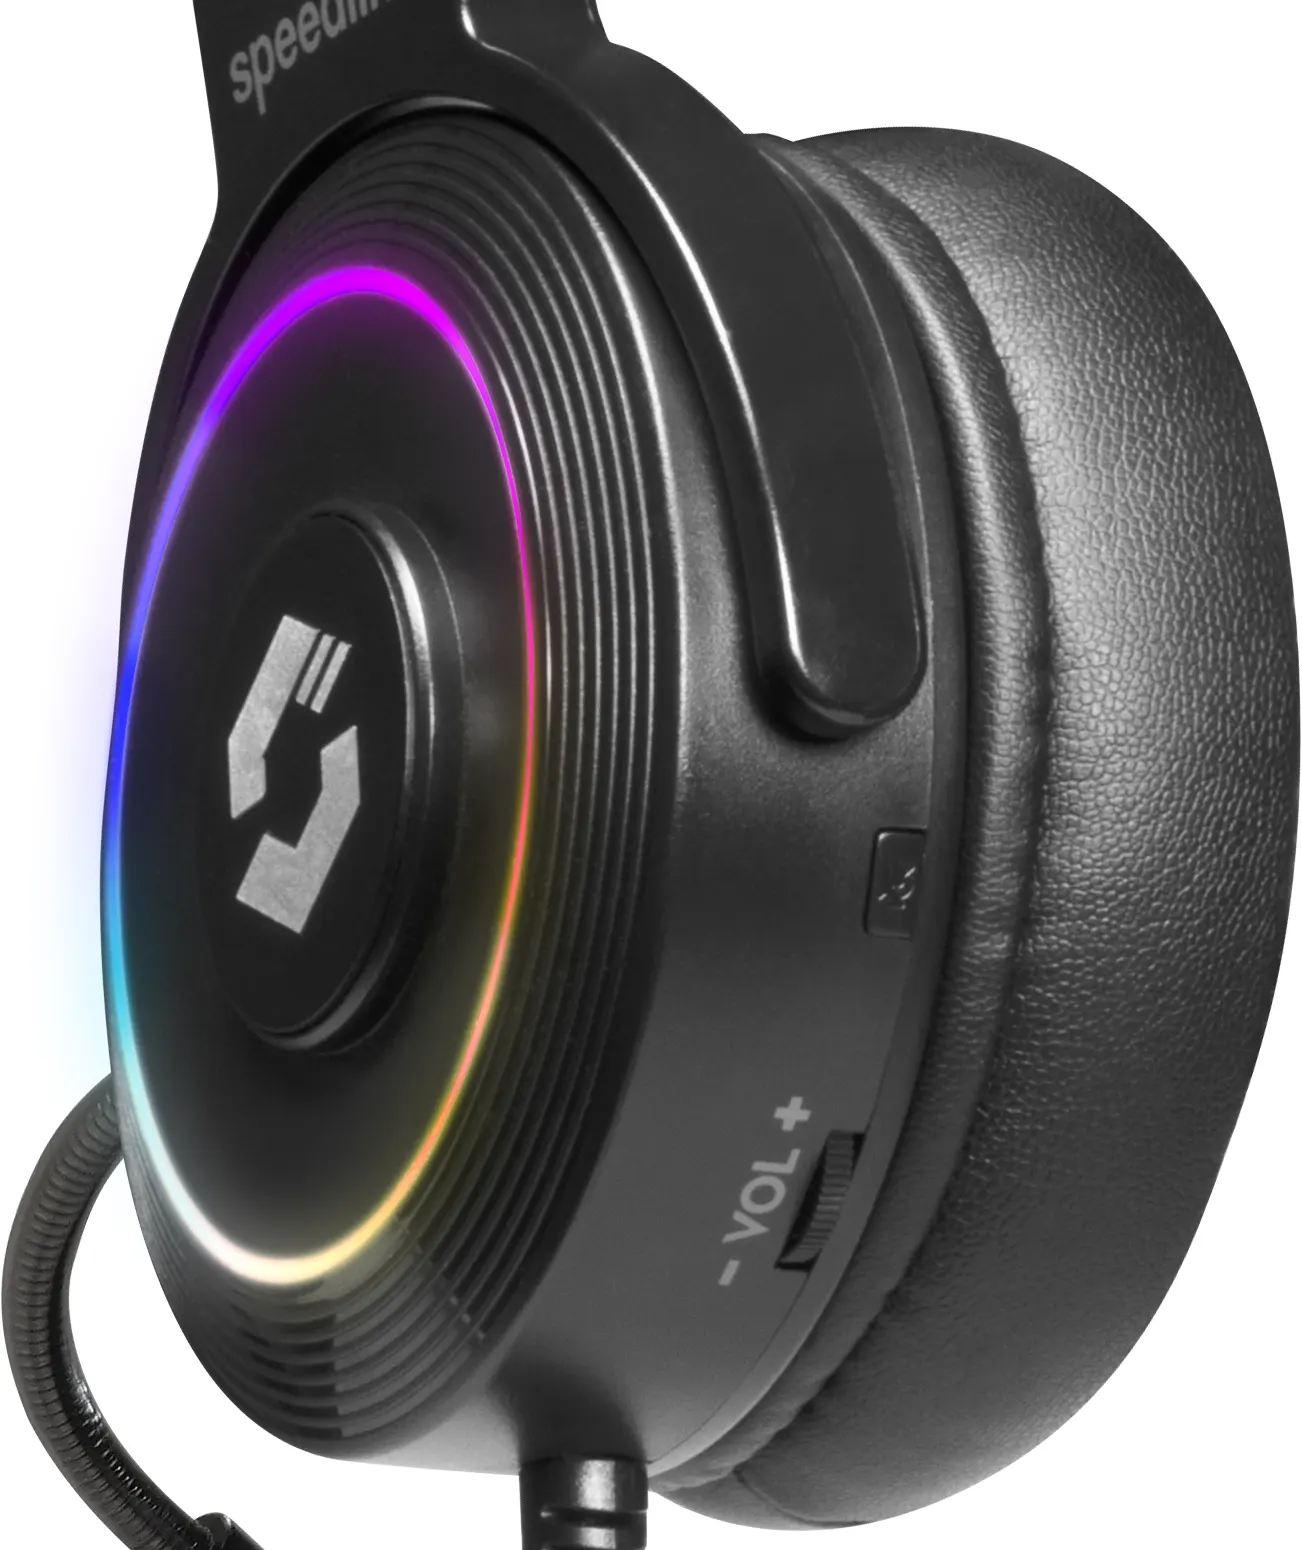 SpeedLink SL-860005-BK Wired Gaming Headset, Surround Sound, RGB Lighting, Black,